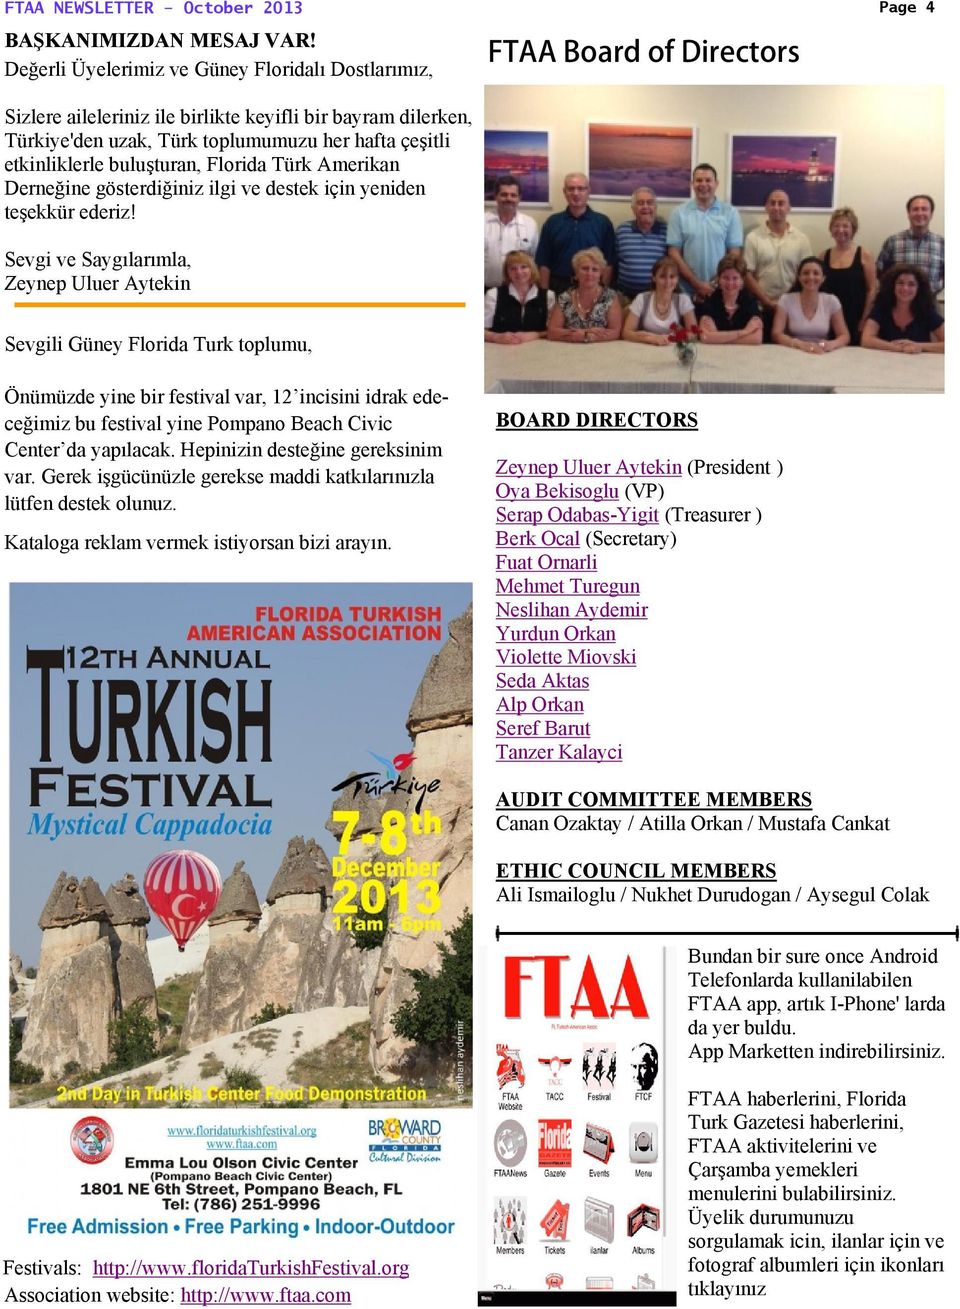 Türk Amerikan Derneğine gösterdiğiniz ilgi ve destek için yeniden teşekkür ederiz!